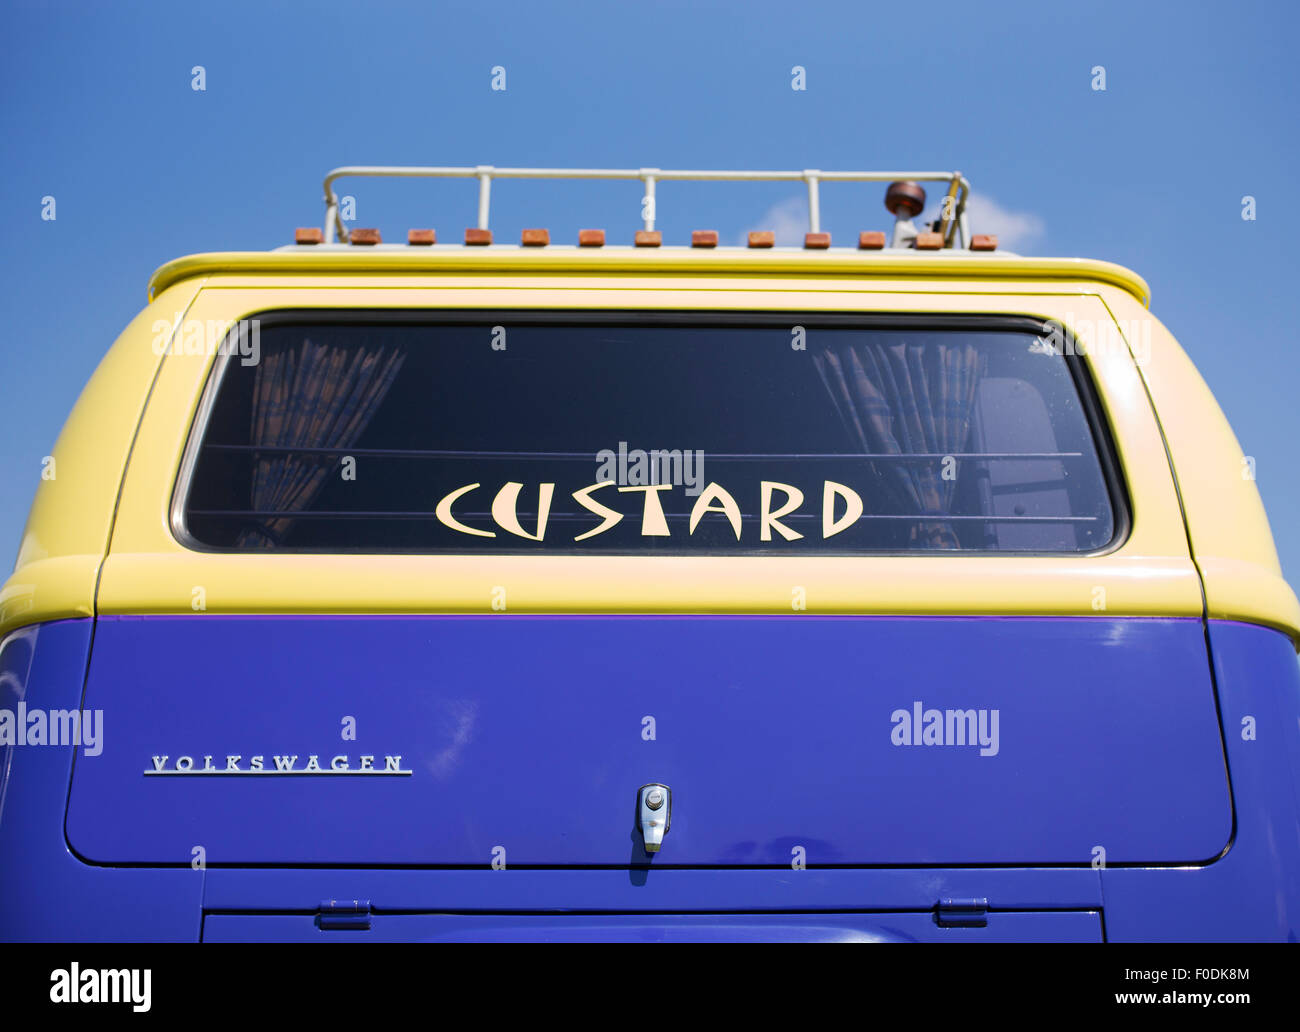 Purple and yellow VW Volkswagen camper van called Custard.  England Stock Photo